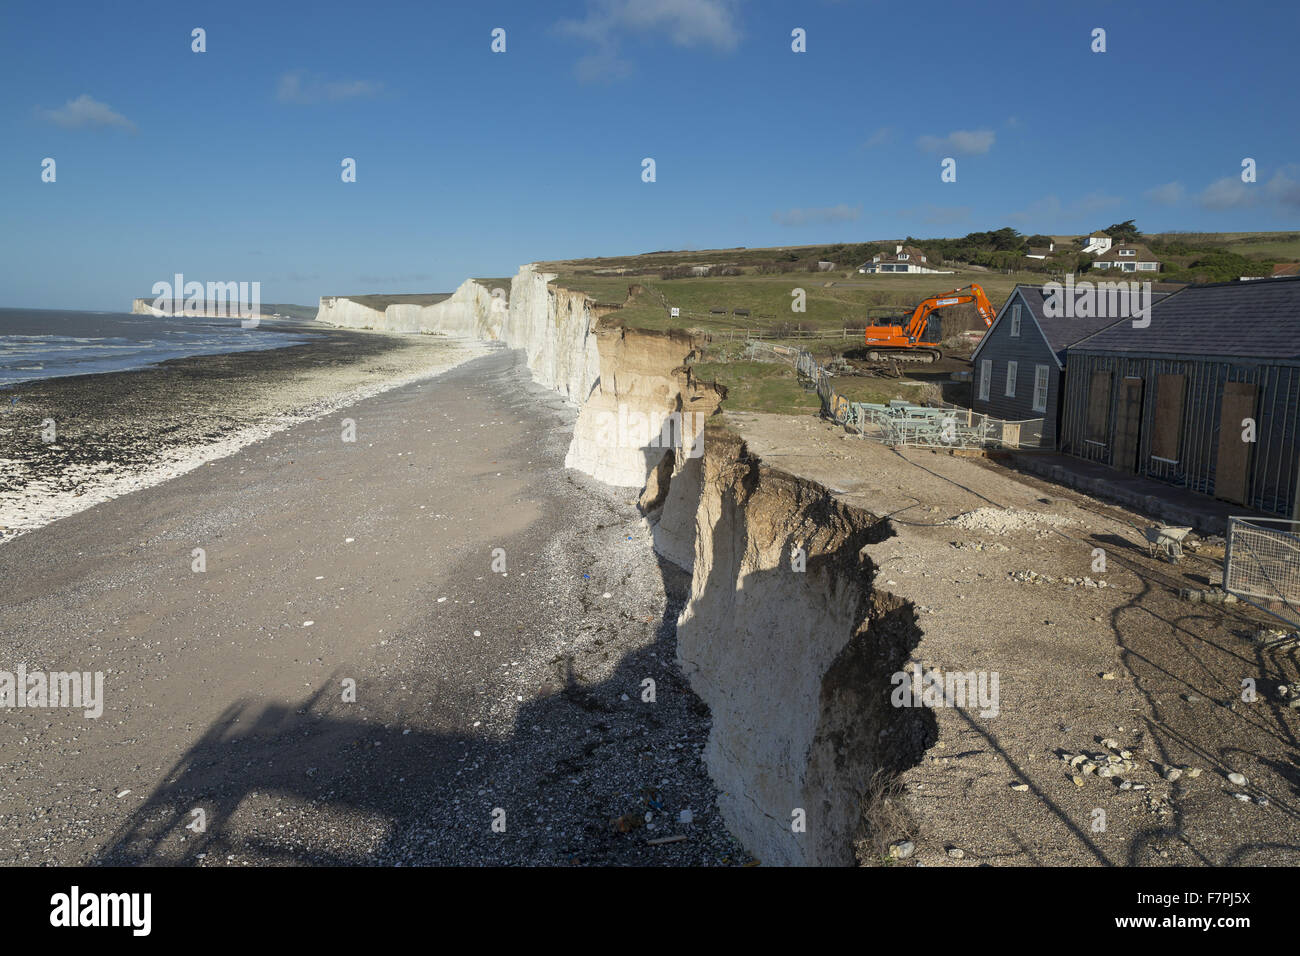 Vista la tempesta-danneggiato scogliere e spiaggia a Birling Gap, East Sussex, qui illustrato nel febbraio 2014, con lavori di demolizione visto che si svolge su una scogliera vulnerabile edifici.. Condizioni meteorologiche estreme nel gennaio e nel febbraio dello stesso anno ha portato in sette anni " Foto Stock